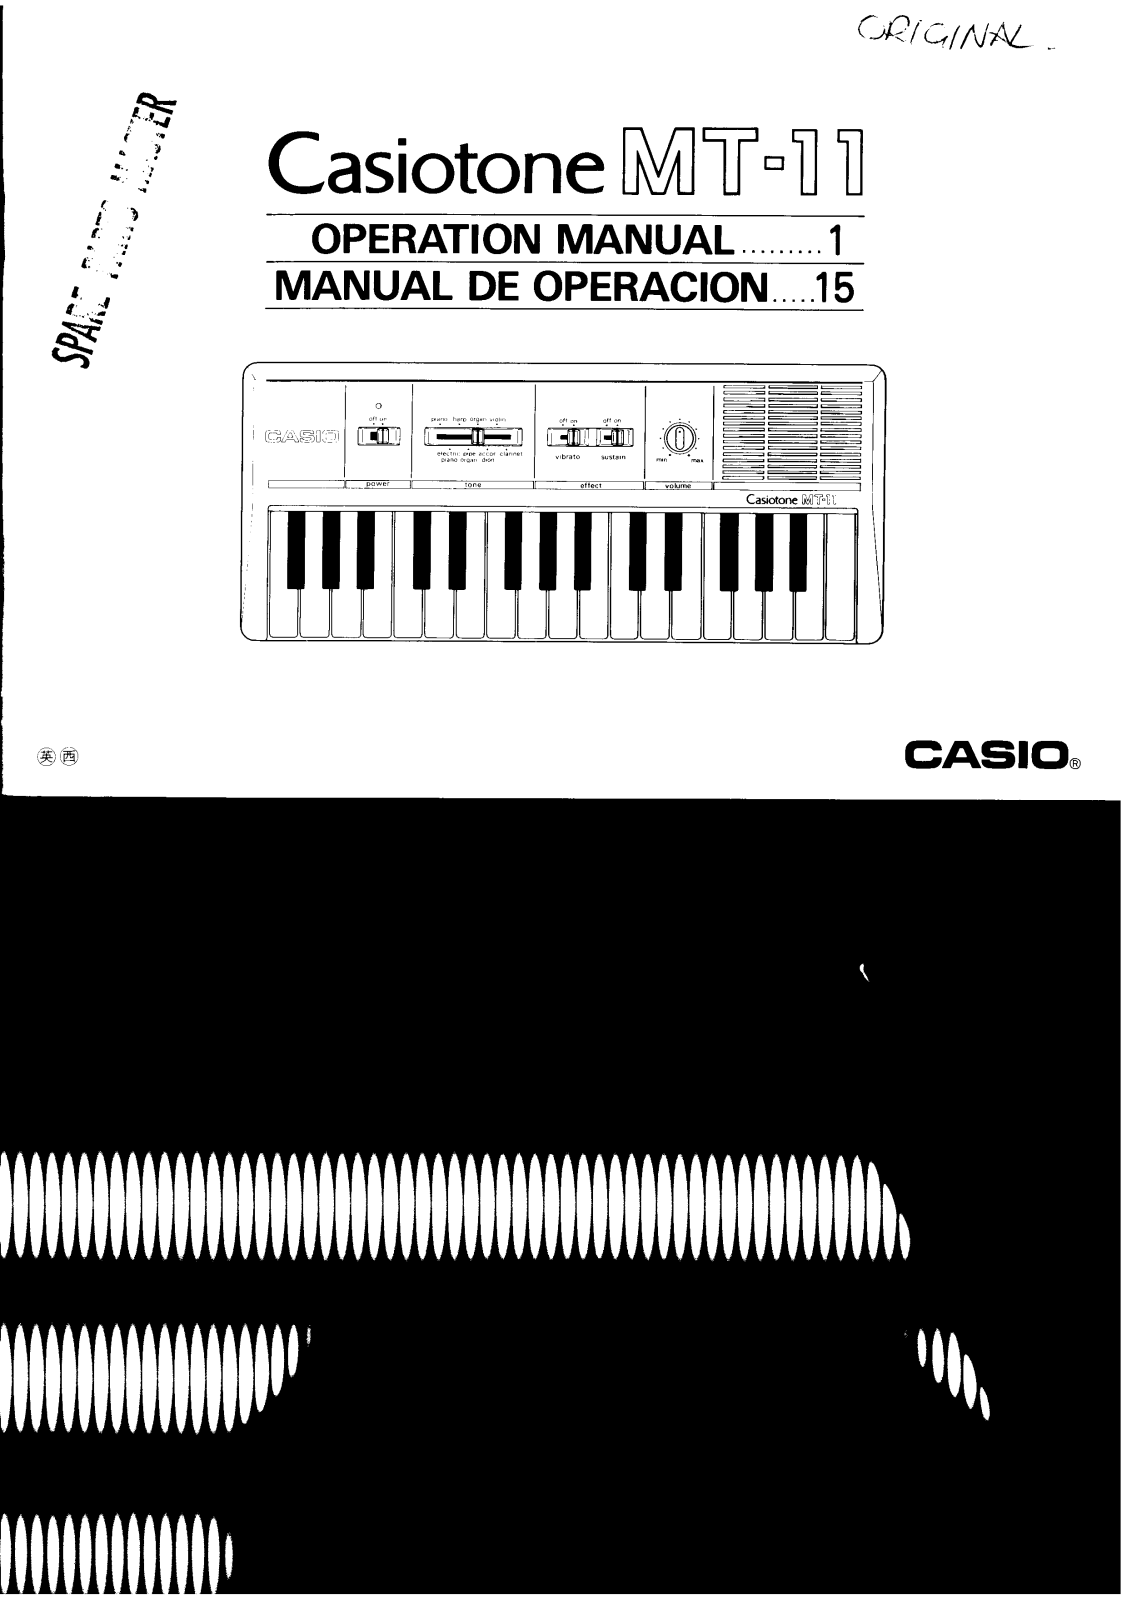 Casio MT-11 User Manual